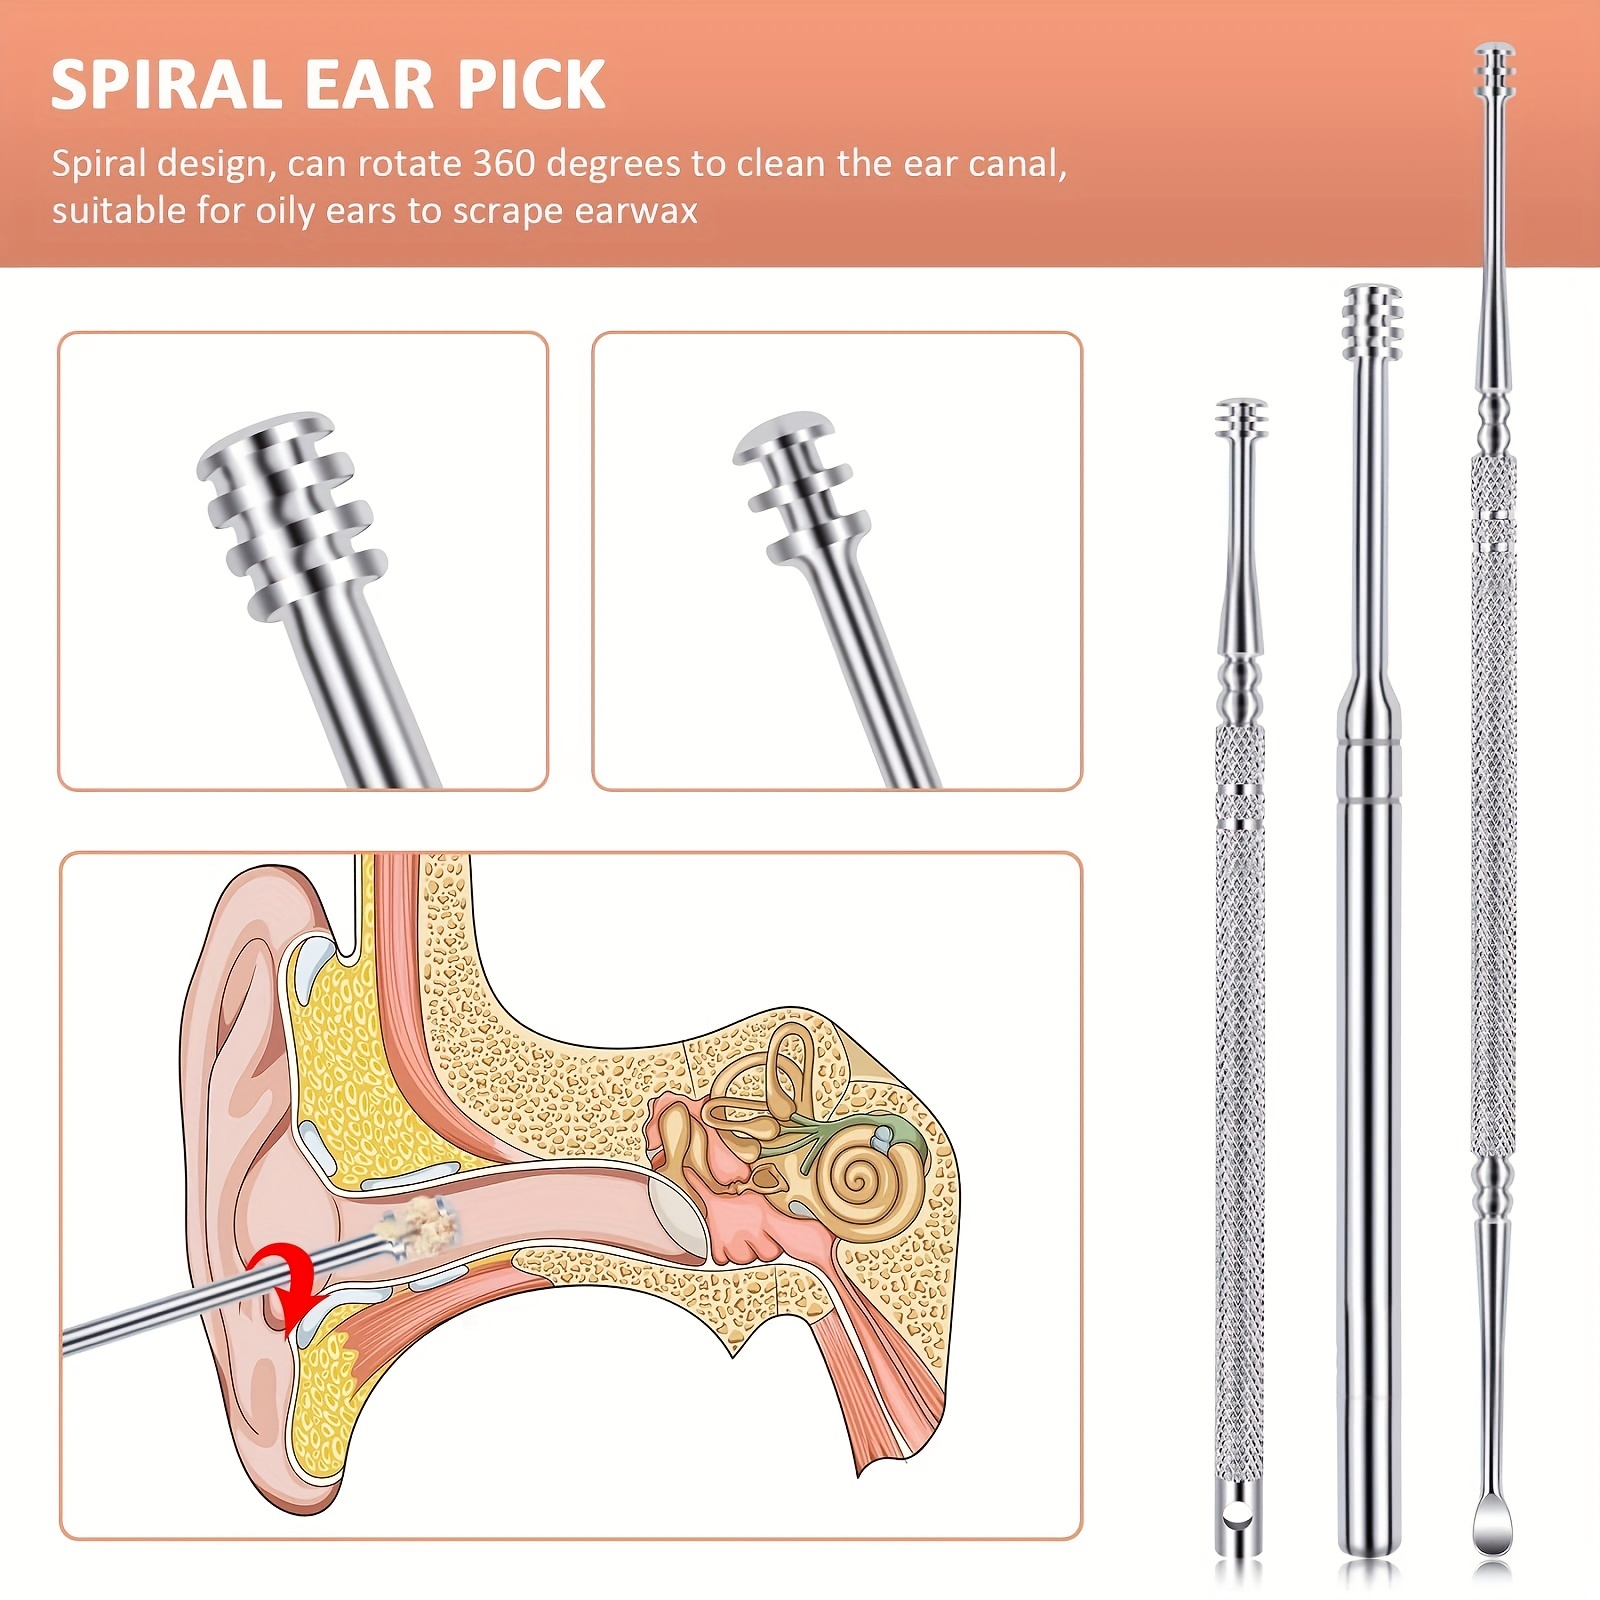 Hunato Ear Wax Removal Stainless Steel Ear Pick Curette Spiral